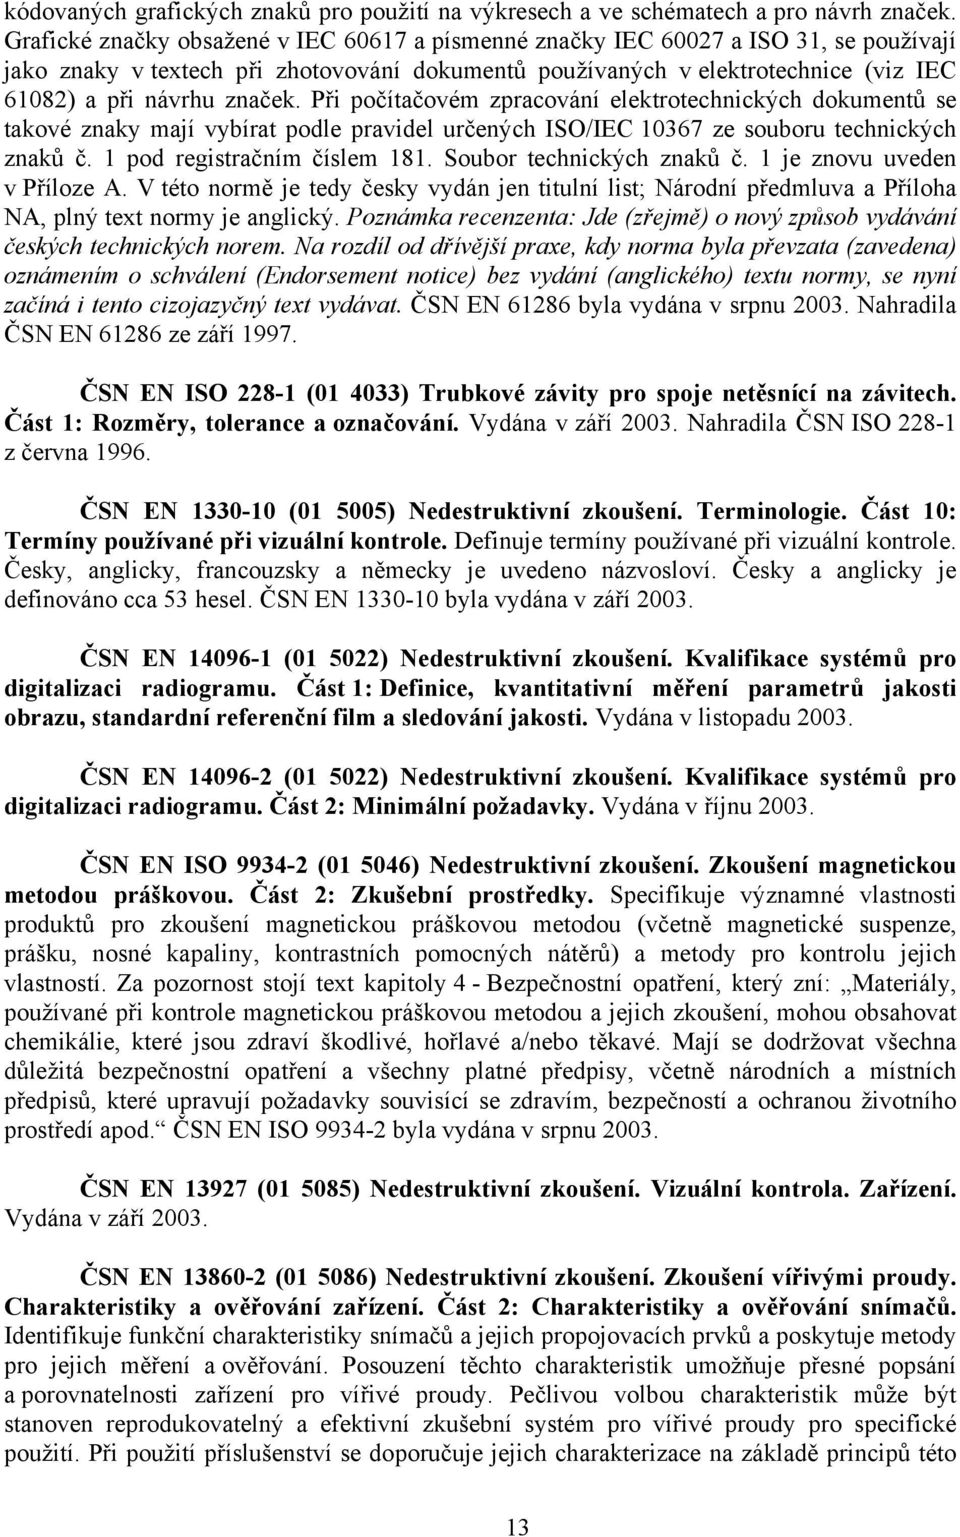 značek. Při počítačovém zpracování elektrotechnických dokumentů se takové znaky mají vybírat podle pravidel určených ISO/IEC 10367 ze souboru technických znaků č. 1 pod registračním číslem 181.